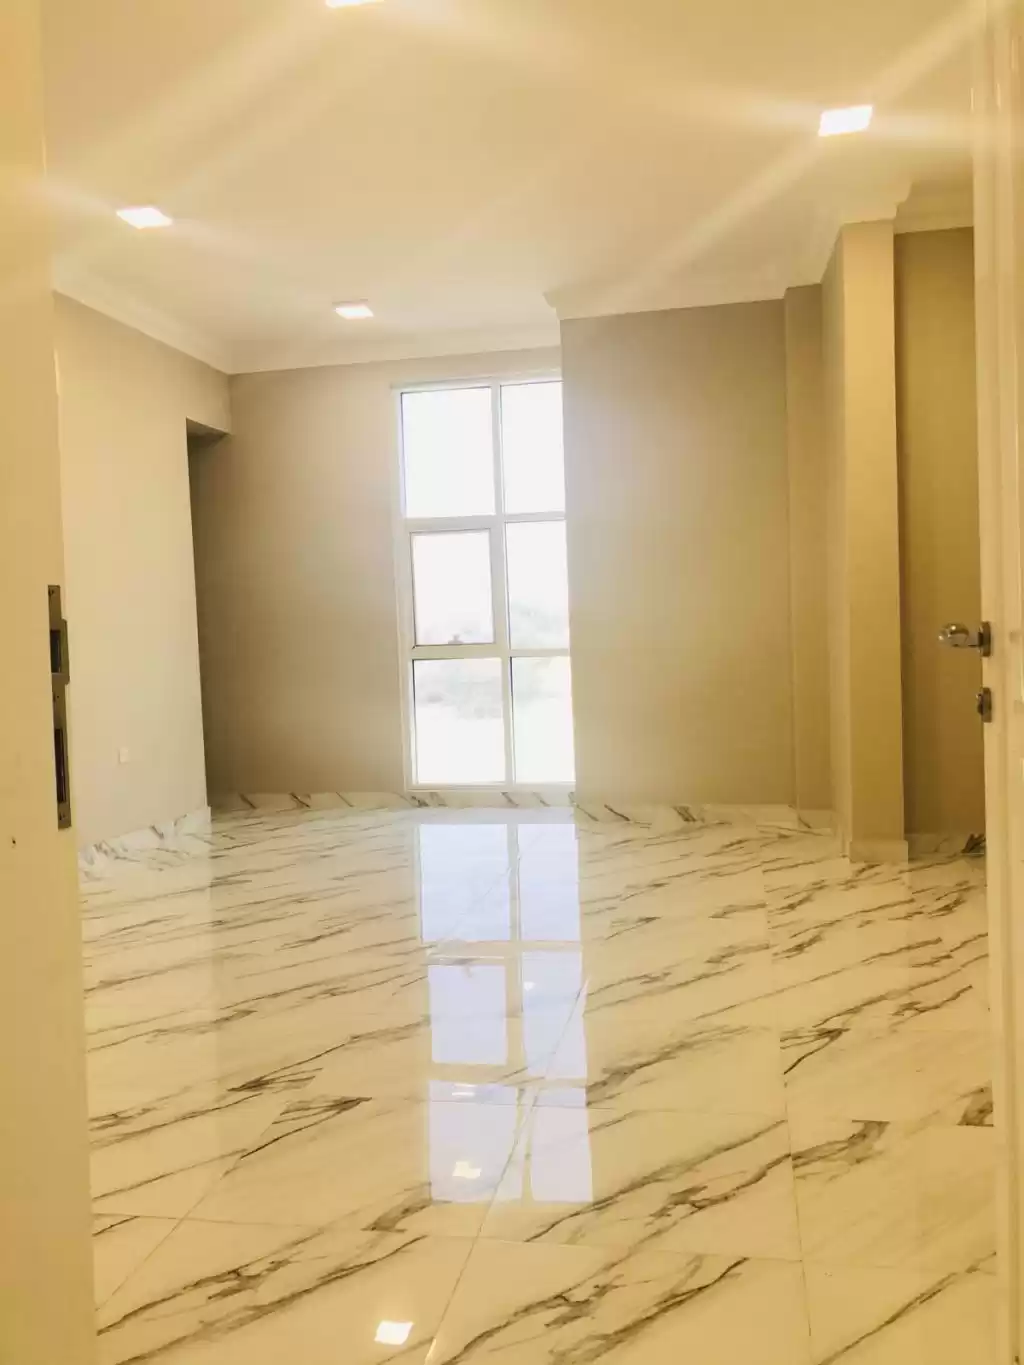 Résidentiel Propriété prête 7+ chambres U / f Villa autonome  a louer au Al-Sadd , Doha #13350 - 1  image 